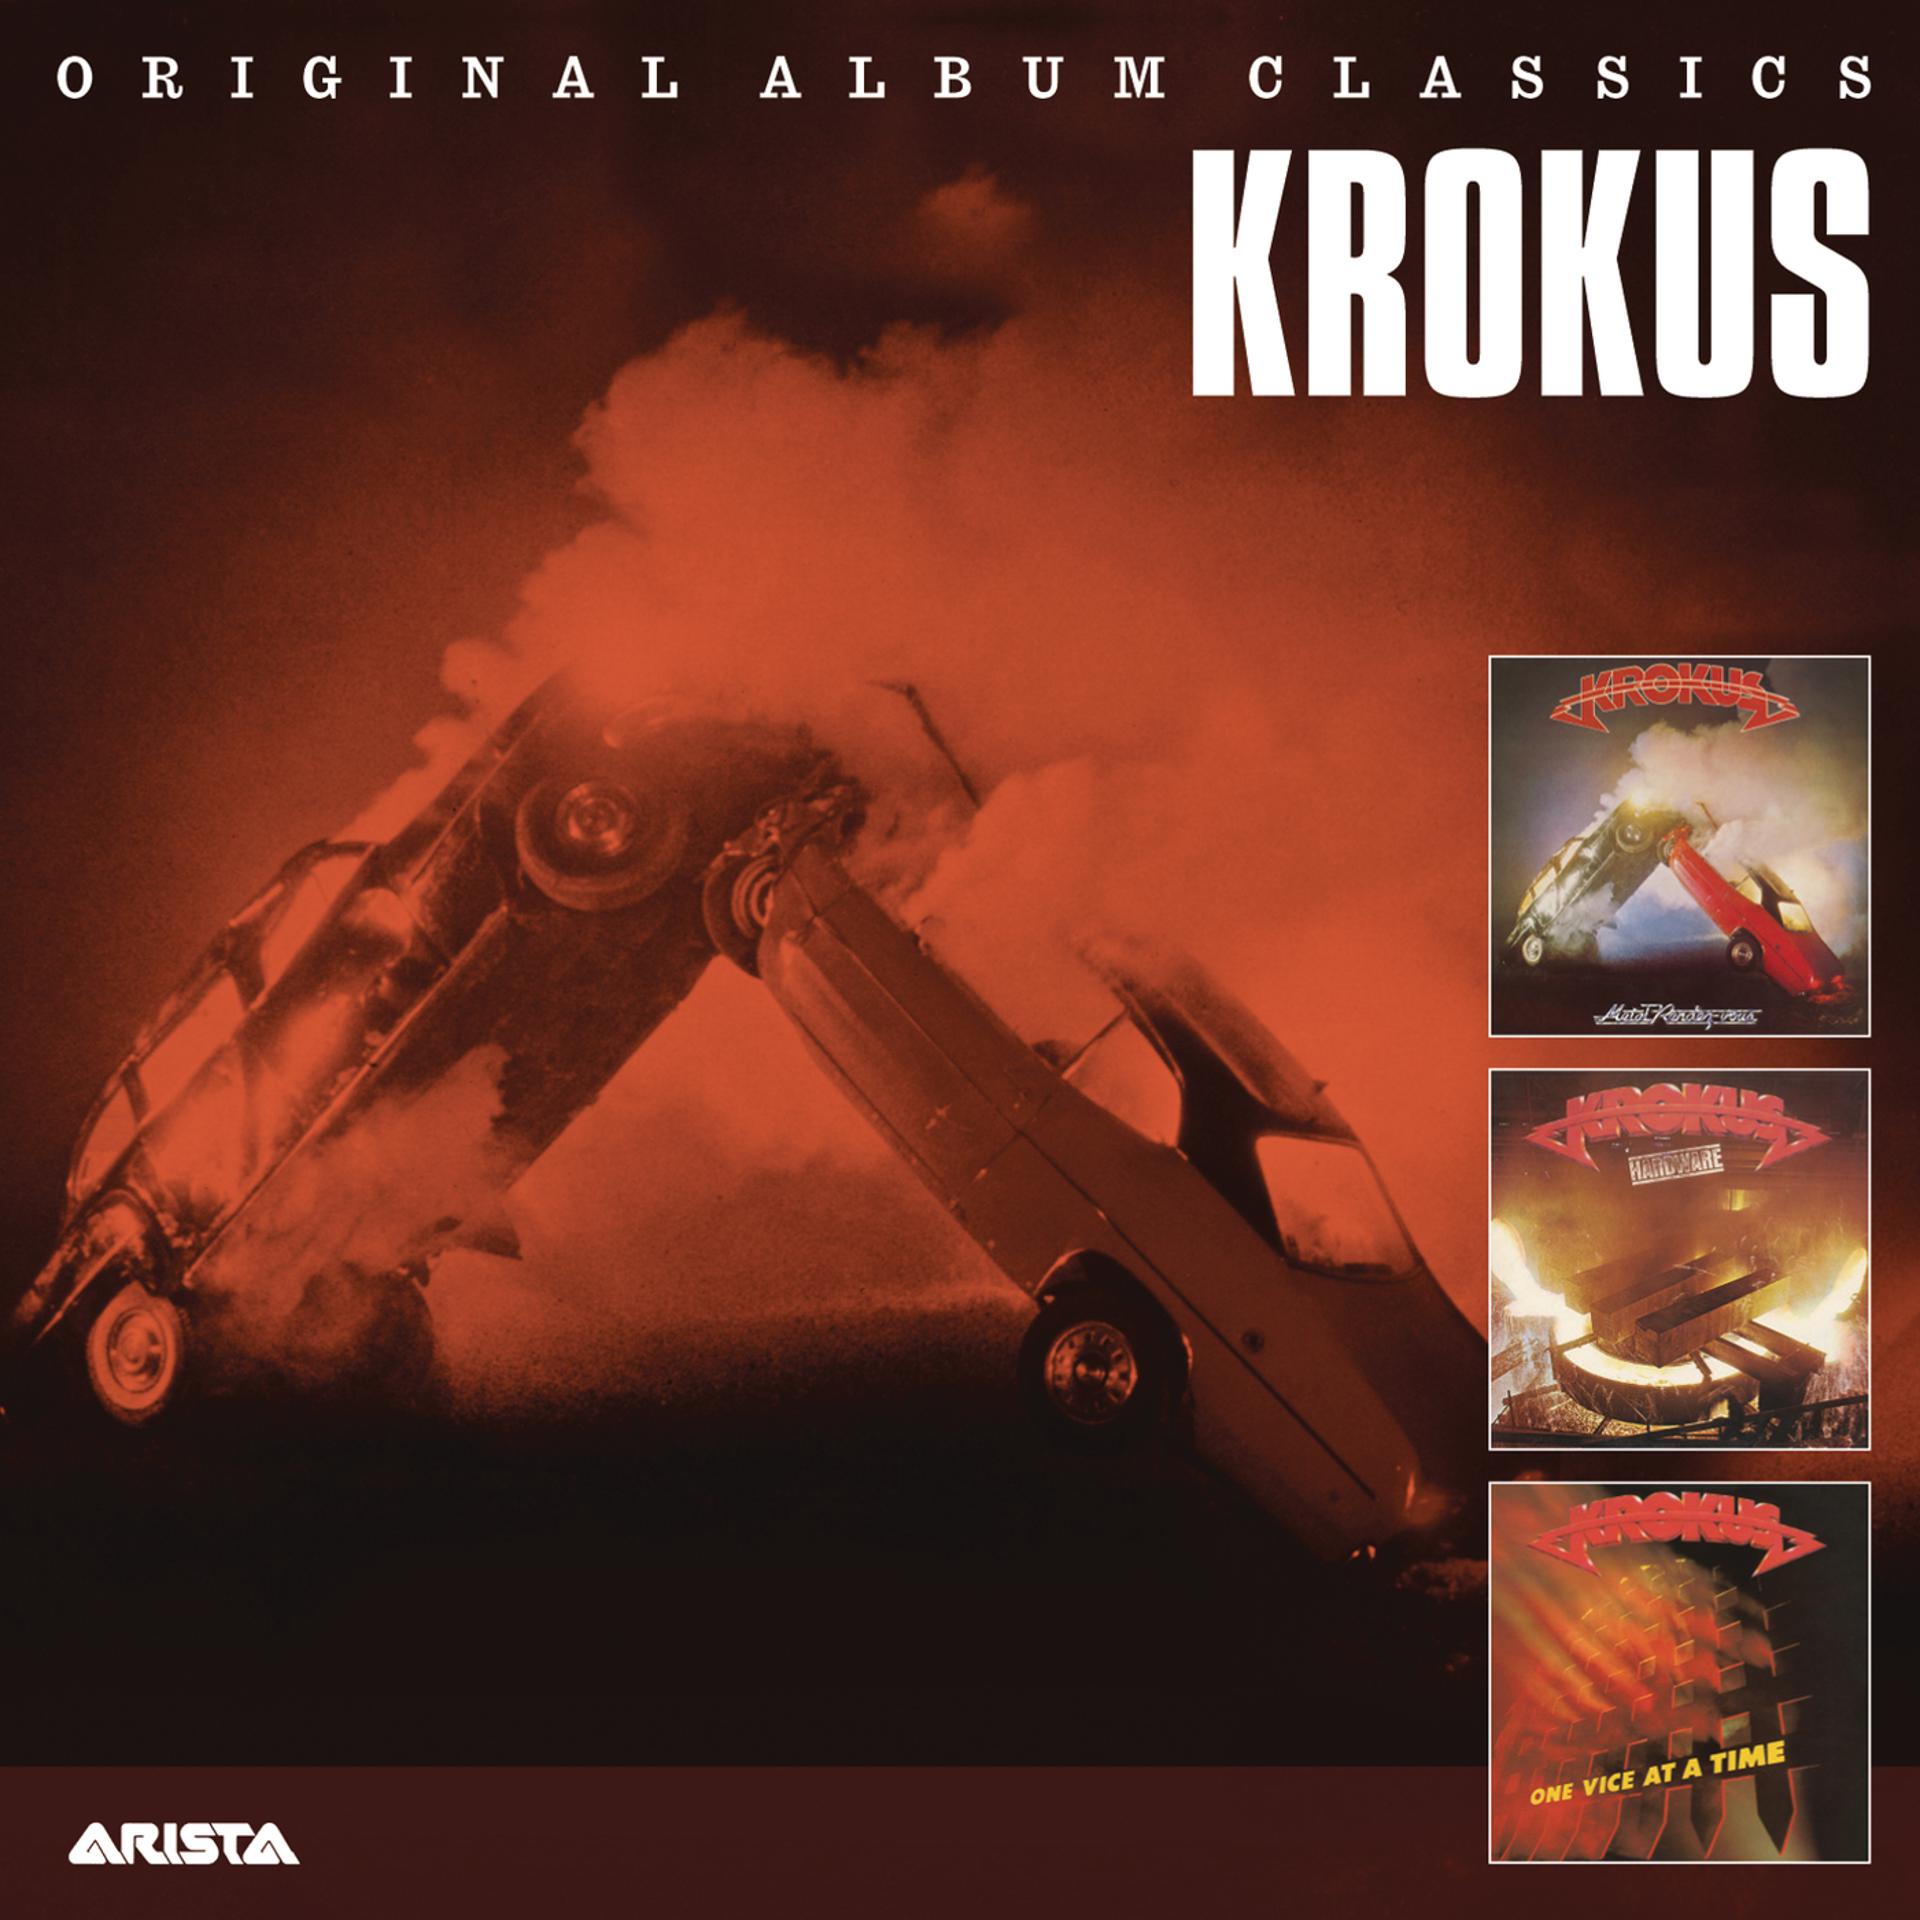 Альбом памяти крокус слушать. Original album Classics Krokus. Krokus 1980 Metal Rendez vous. Krokus "Metal Rendez-vous". Krokus – Hardware.